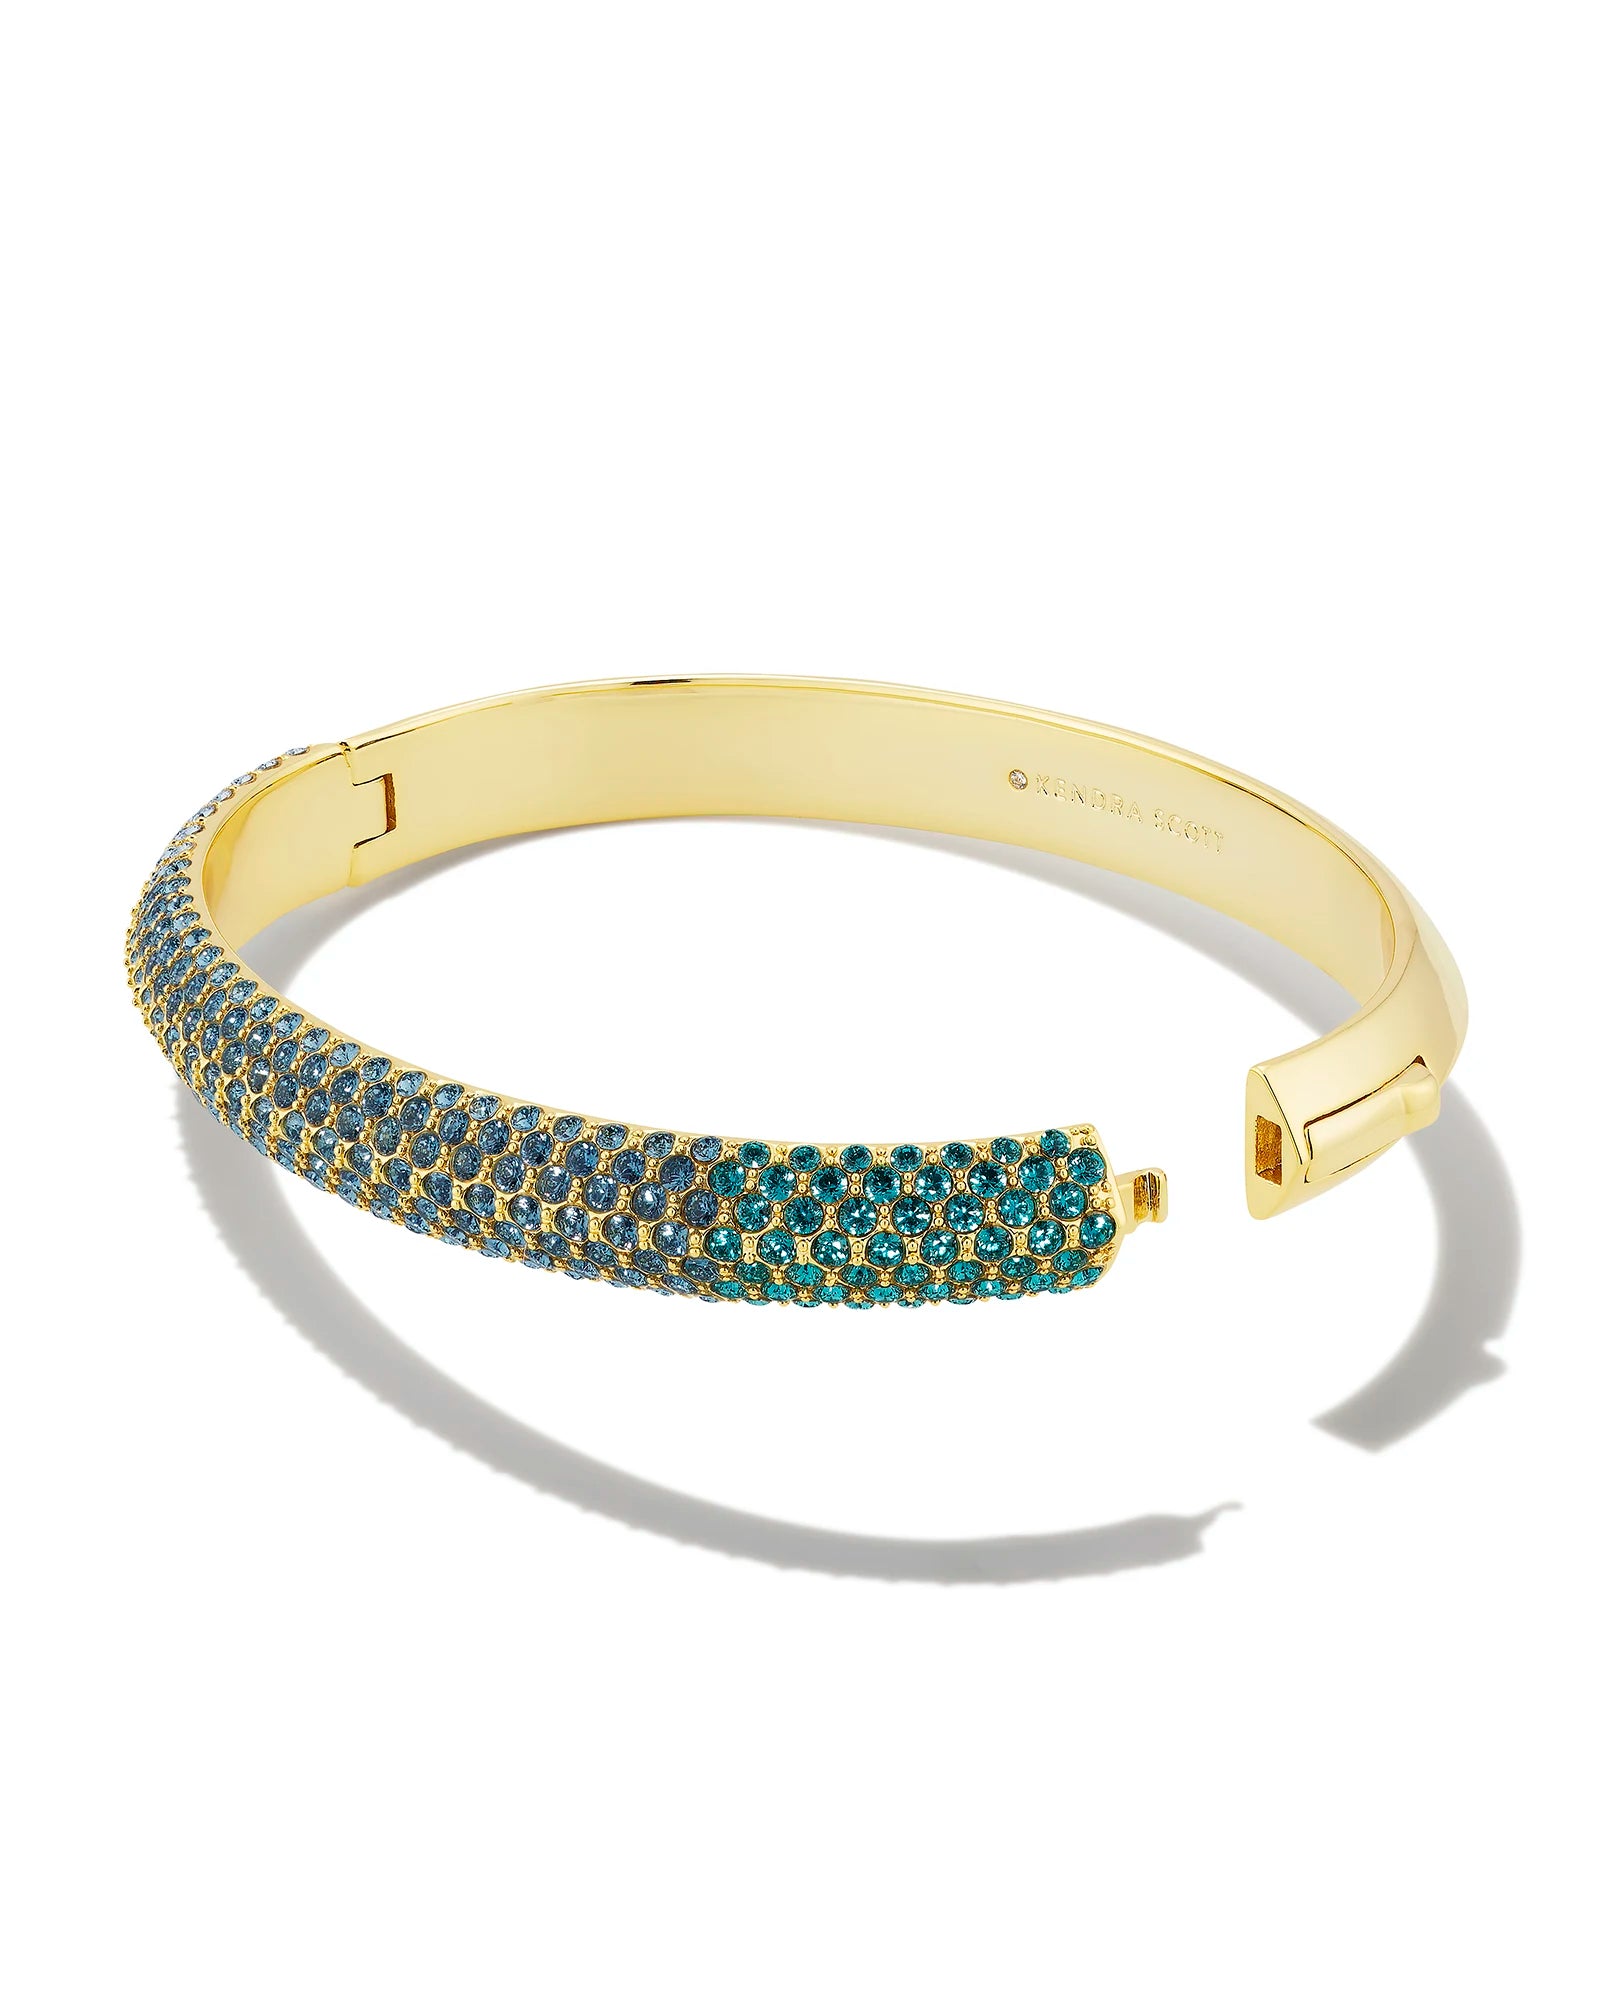 Kendra Scott Mikki Pave Bangle Bracelet Gold Green Blue Ombre CZ M/L-Bracelets-Kendra Scott-B00120GLD-The Twisted Chandelier